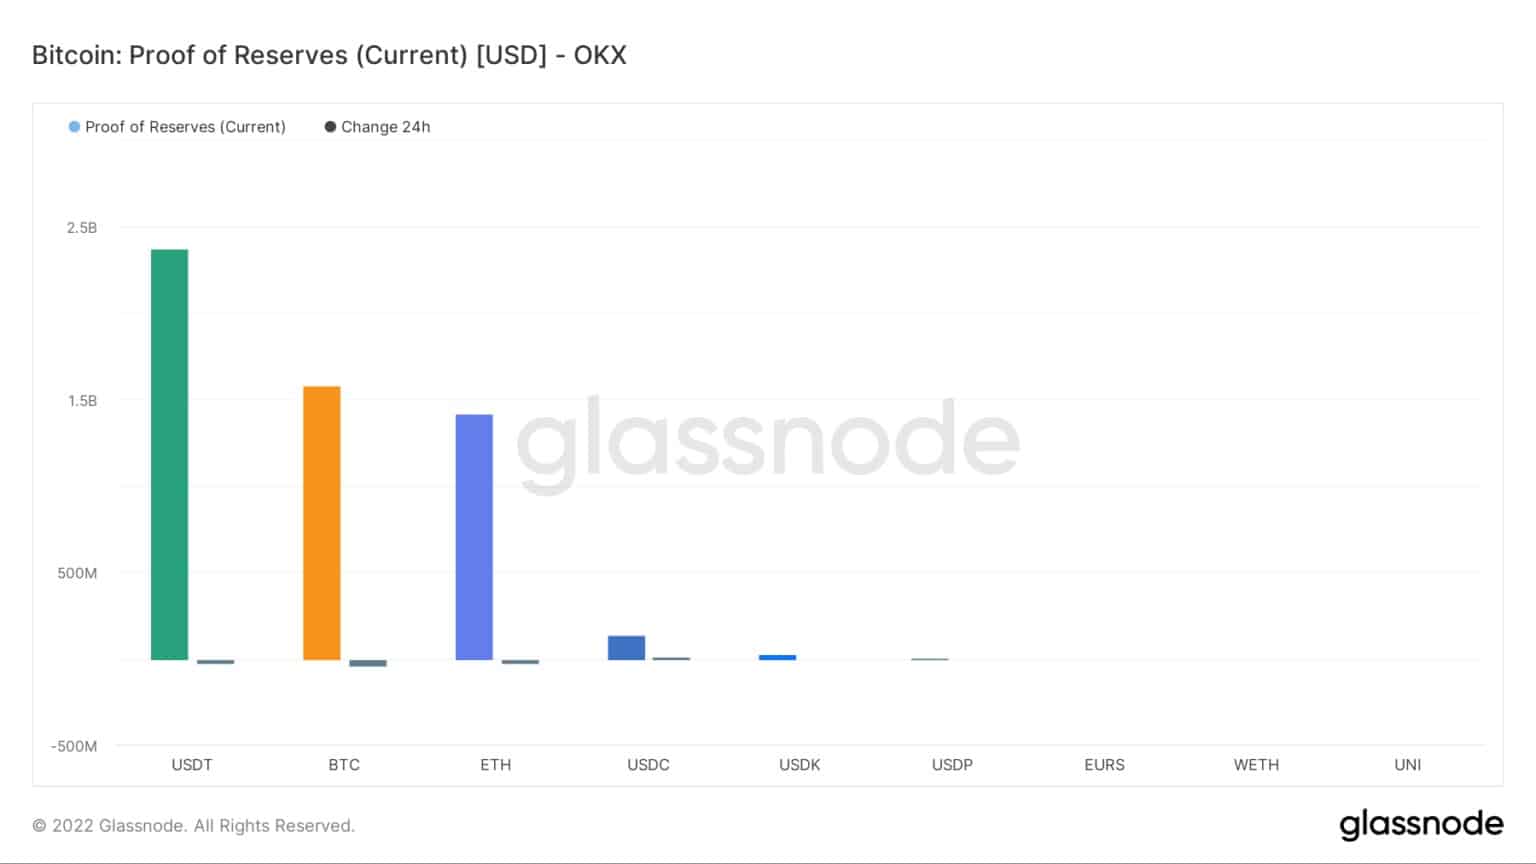 Preuve des réserves - OKX / Source : Glassnode